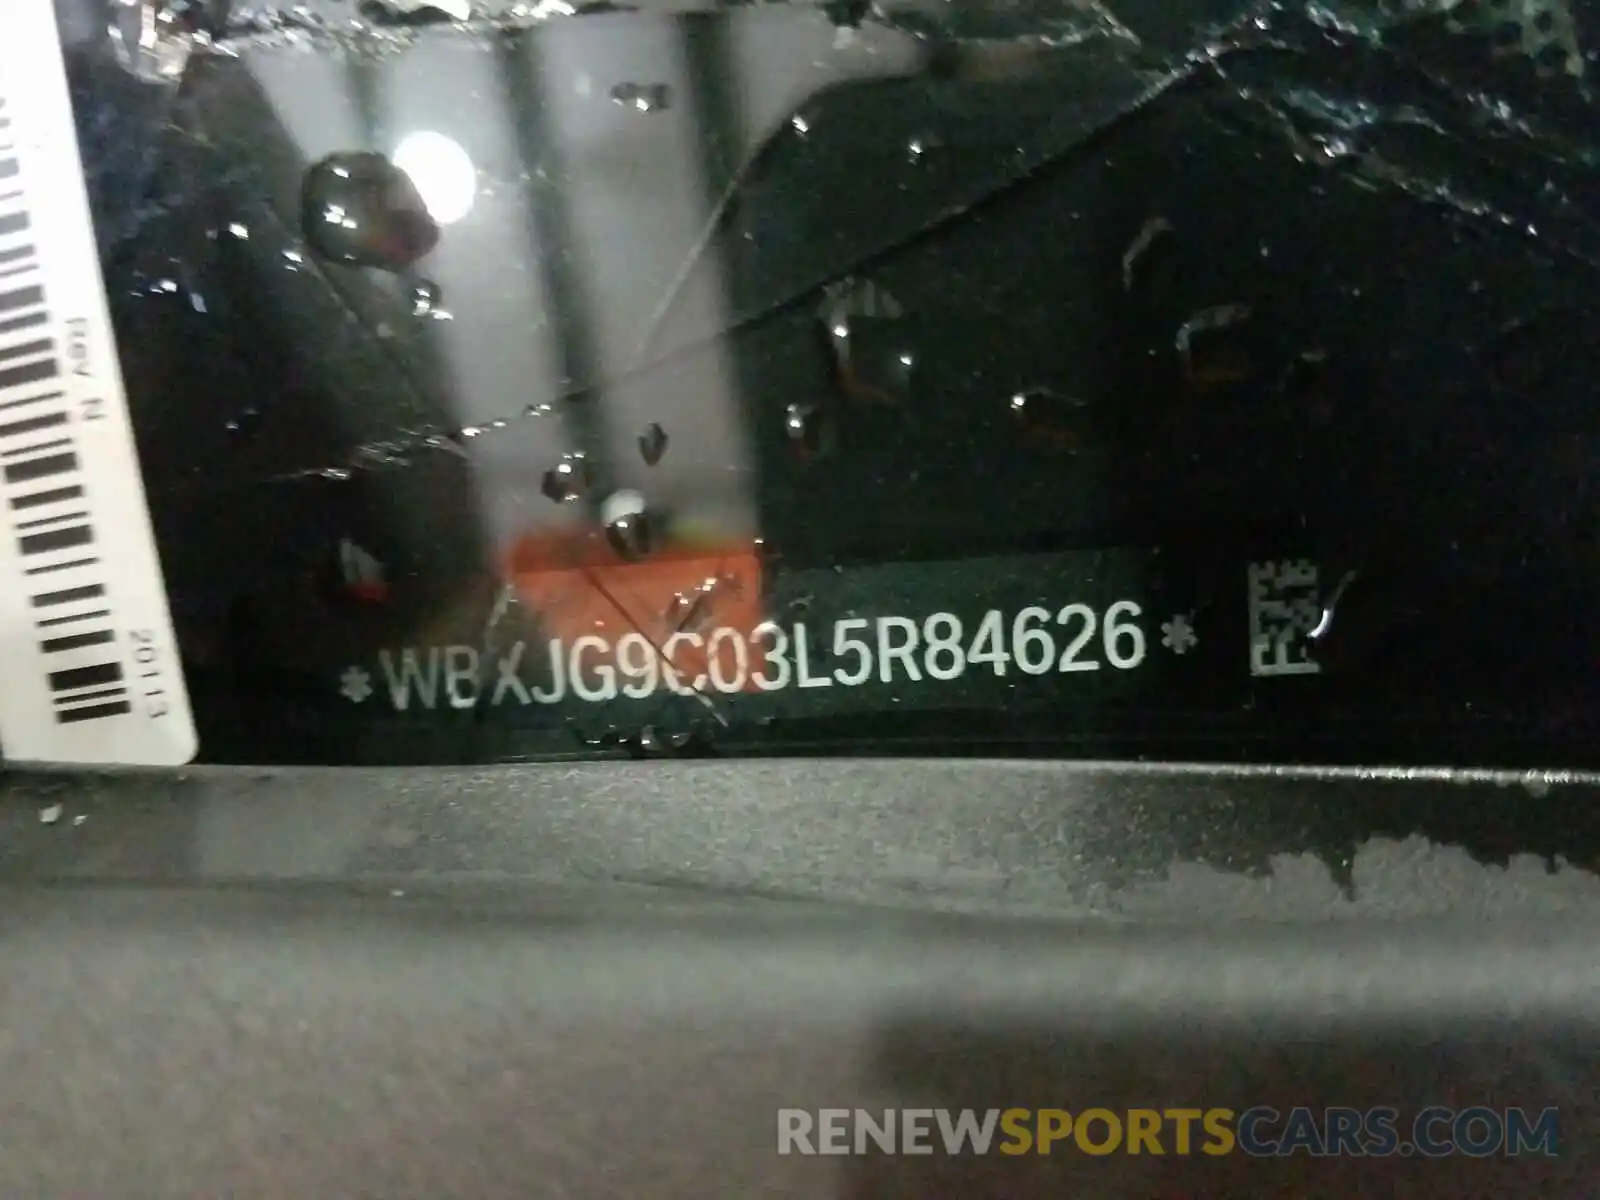 10 Photograph of a damaged car WBXJG9C03L5R84626 BMW X1 2020